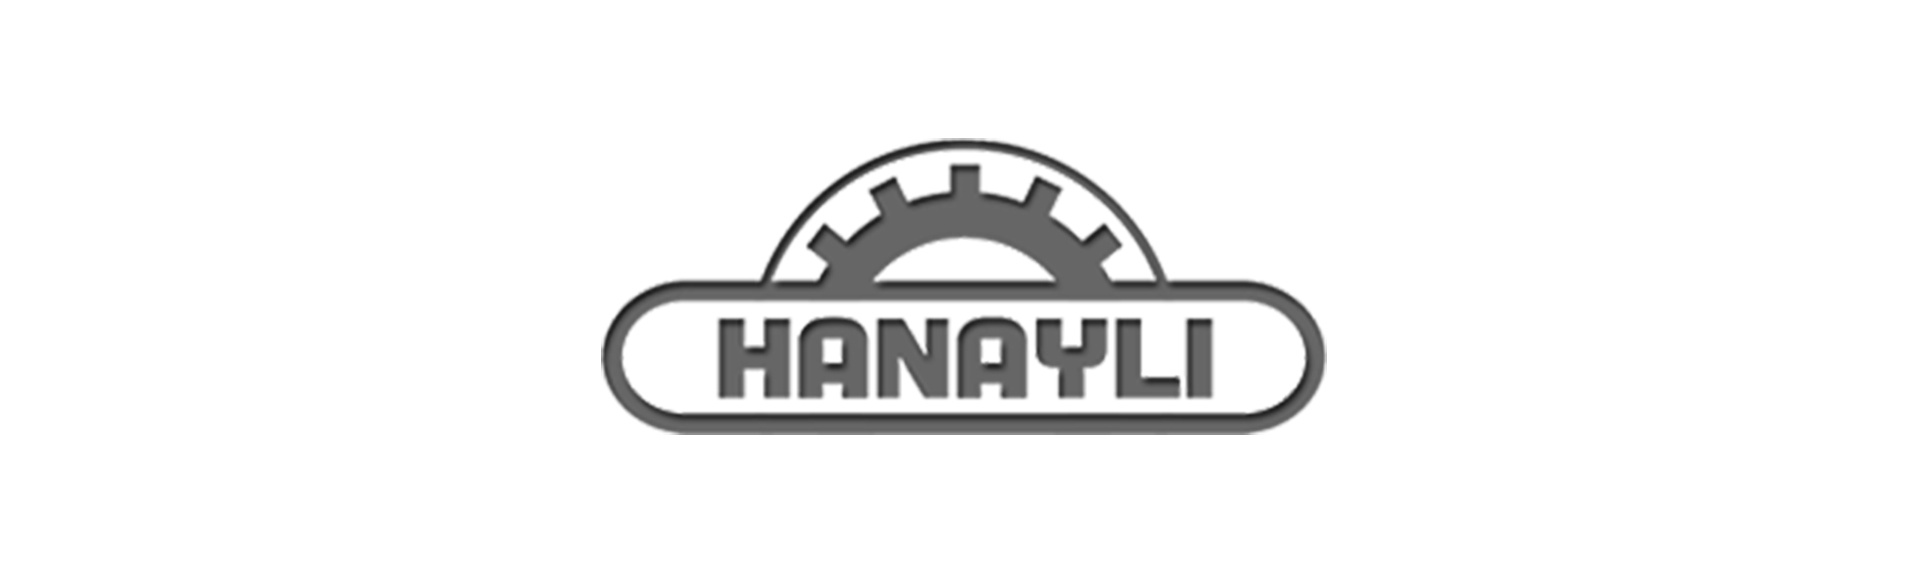 Hanayli